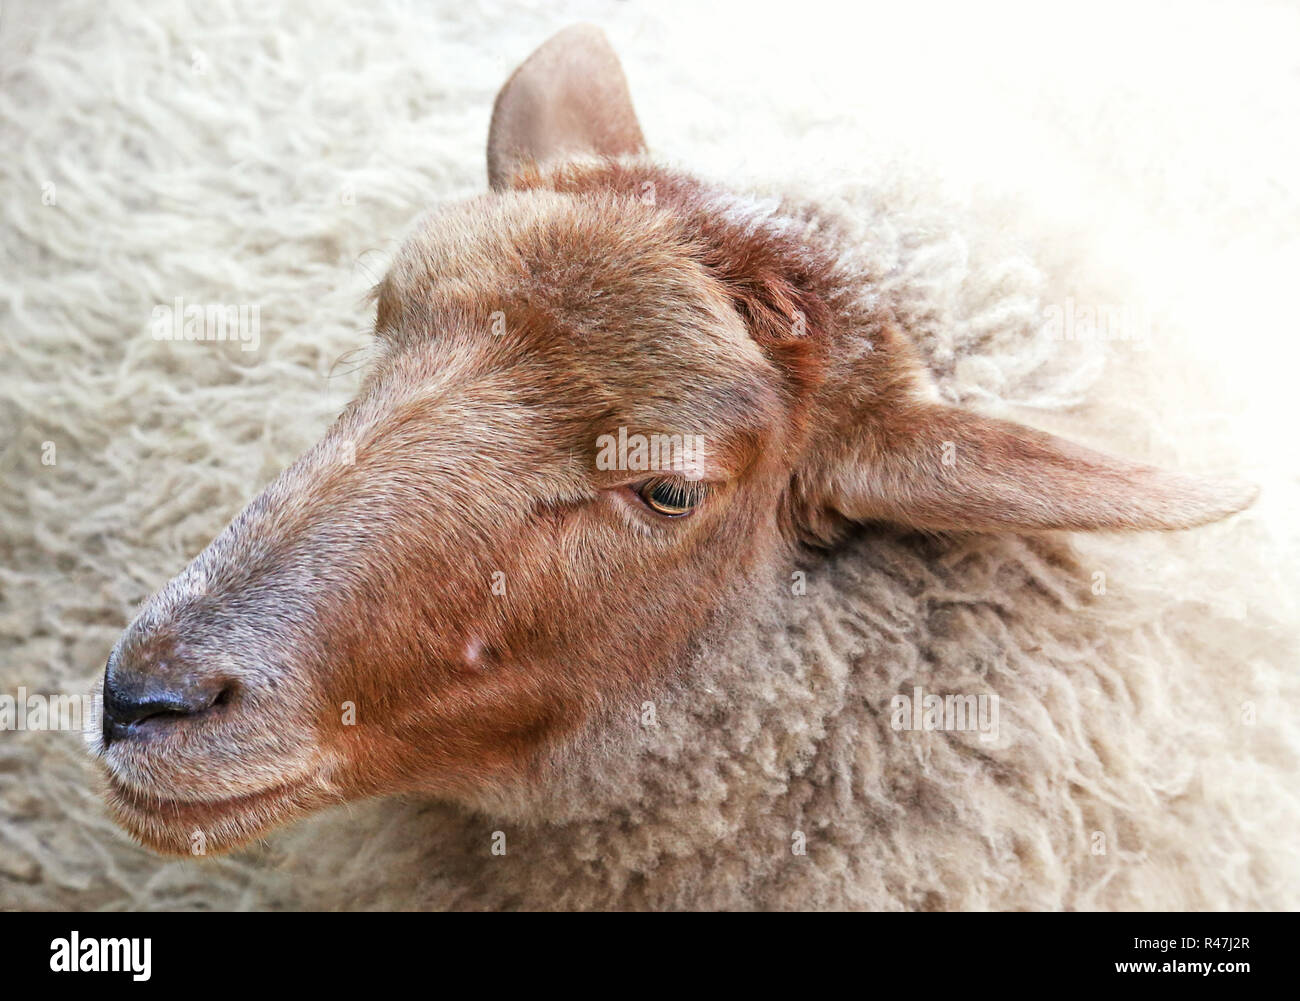 kopfstudie sheep Stock Photo